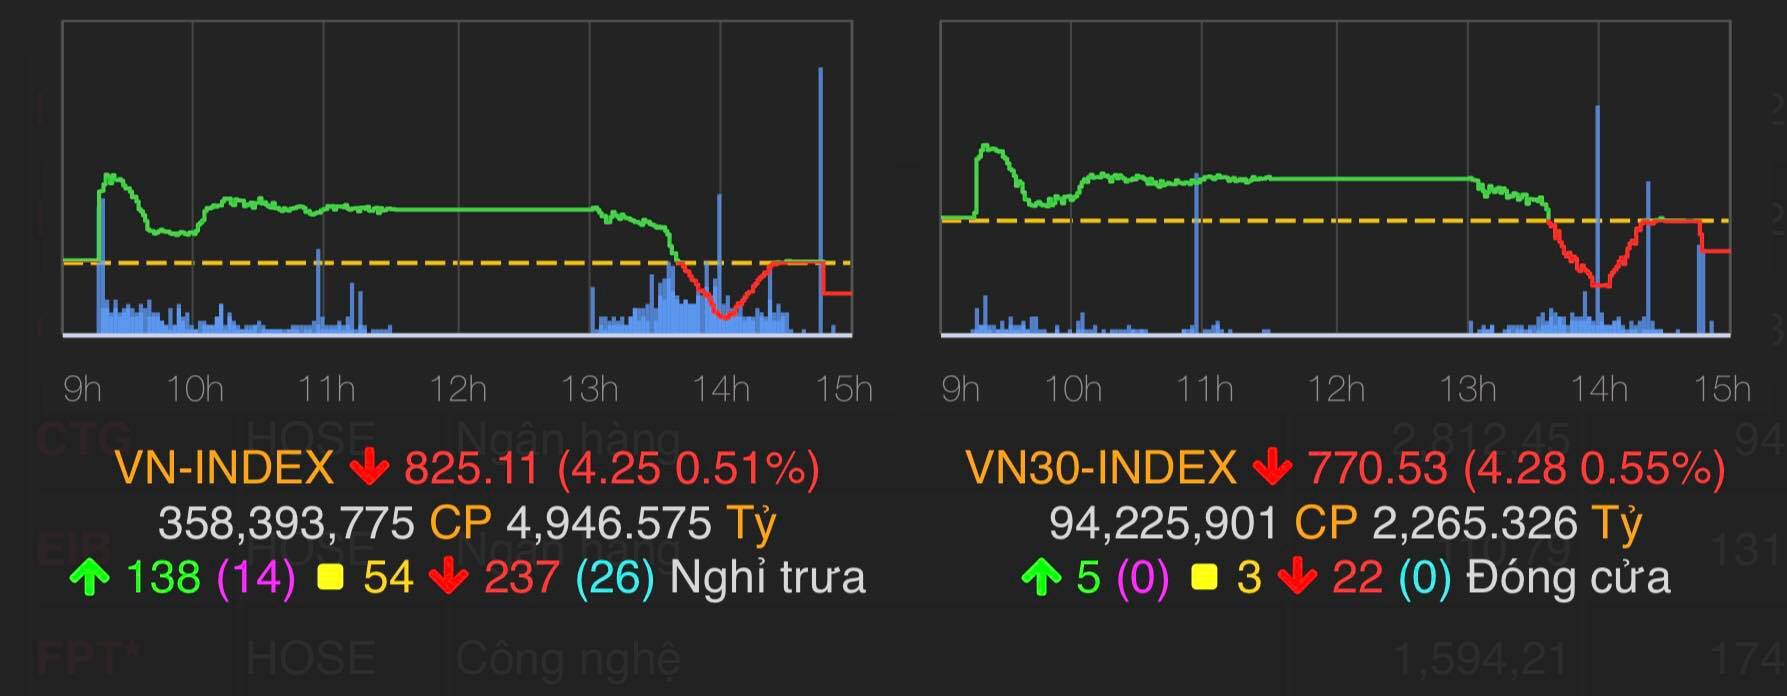 VN-Index mất hơn 4 điểm và lùi về sát ngưỡng 825 điểm.